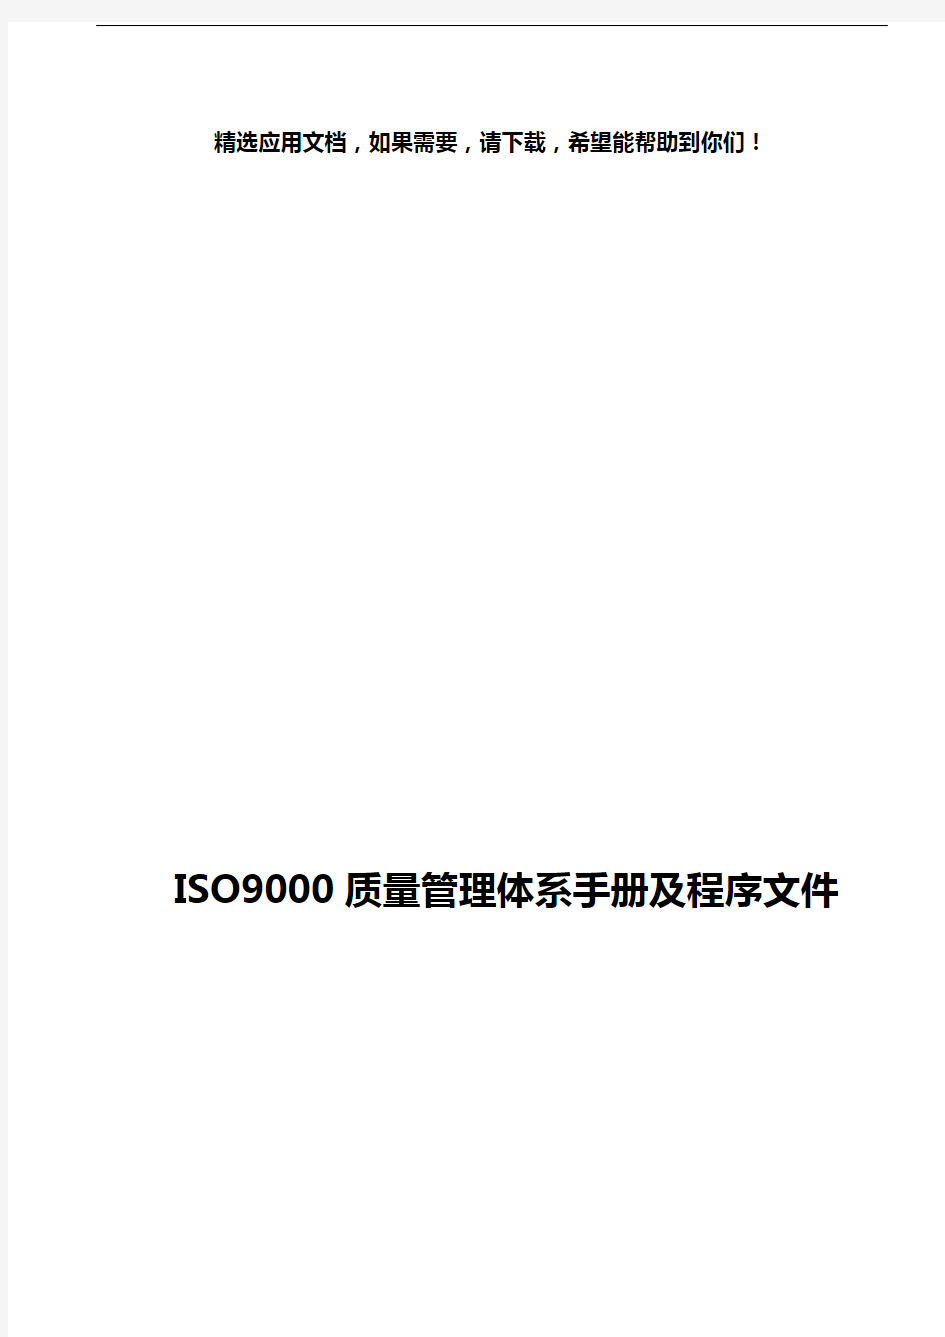 ISO9000质量管理体系手册及程序文件